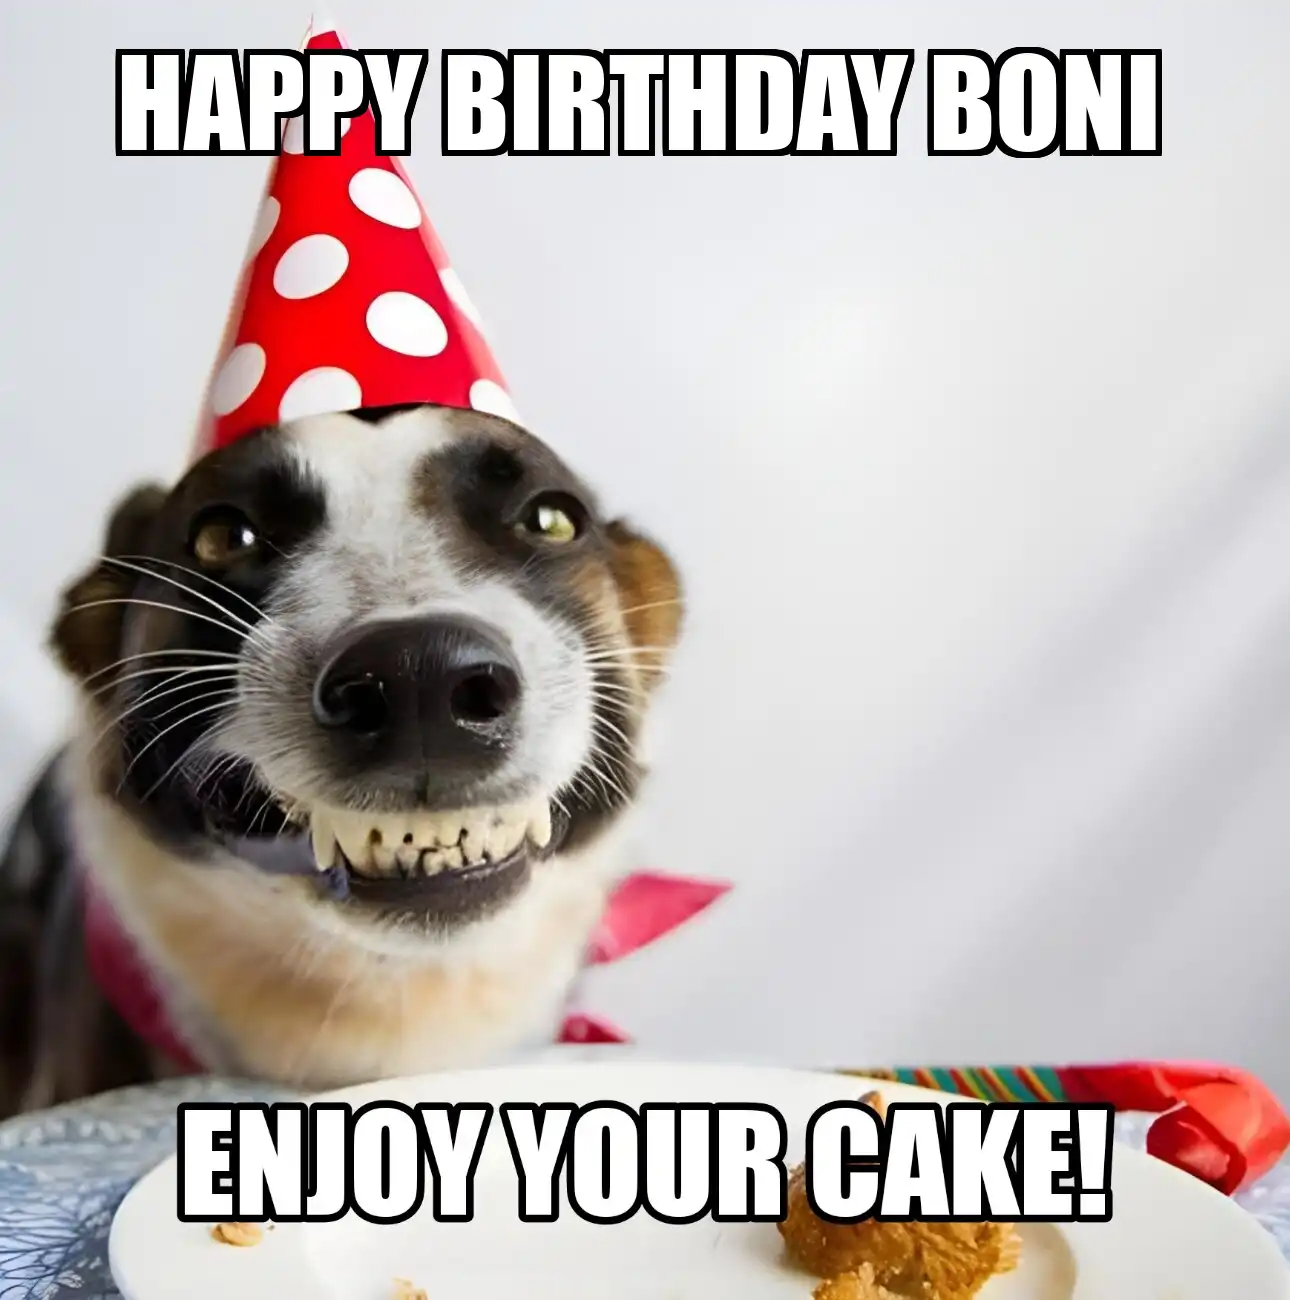 Happy Birthday Boni Enjoy Your Cake Dog Meme